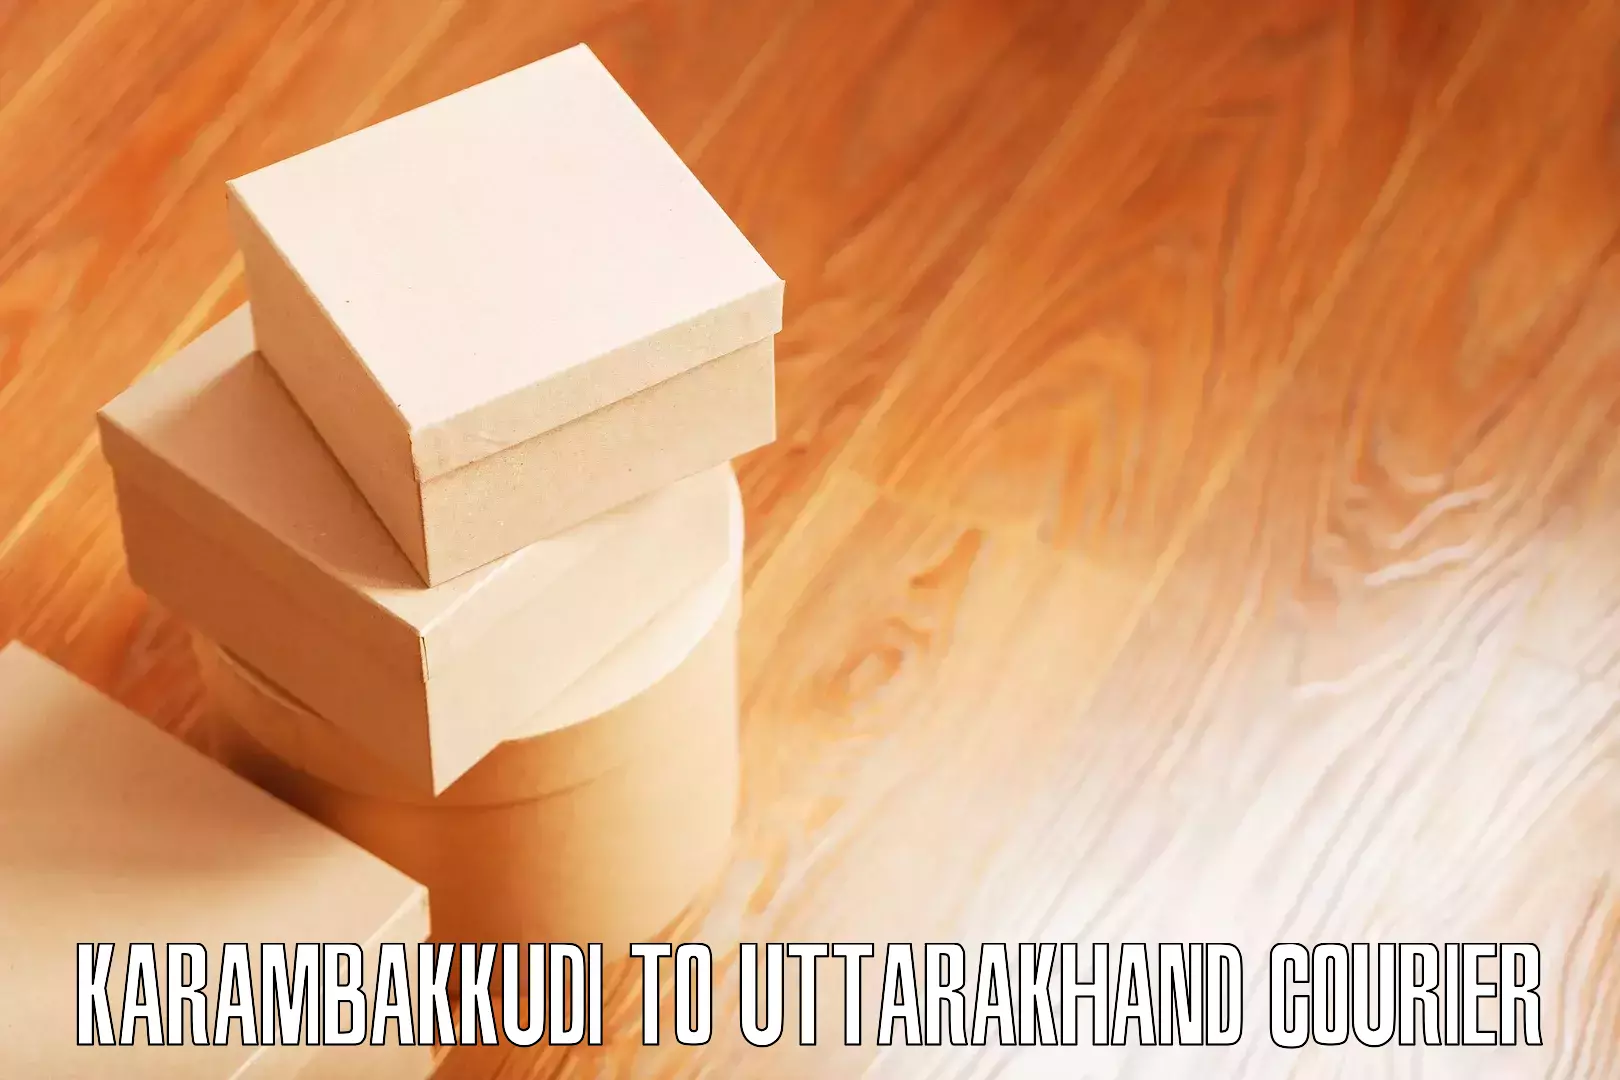 Cost-effective furniture movers Karambakkudi to Nainital